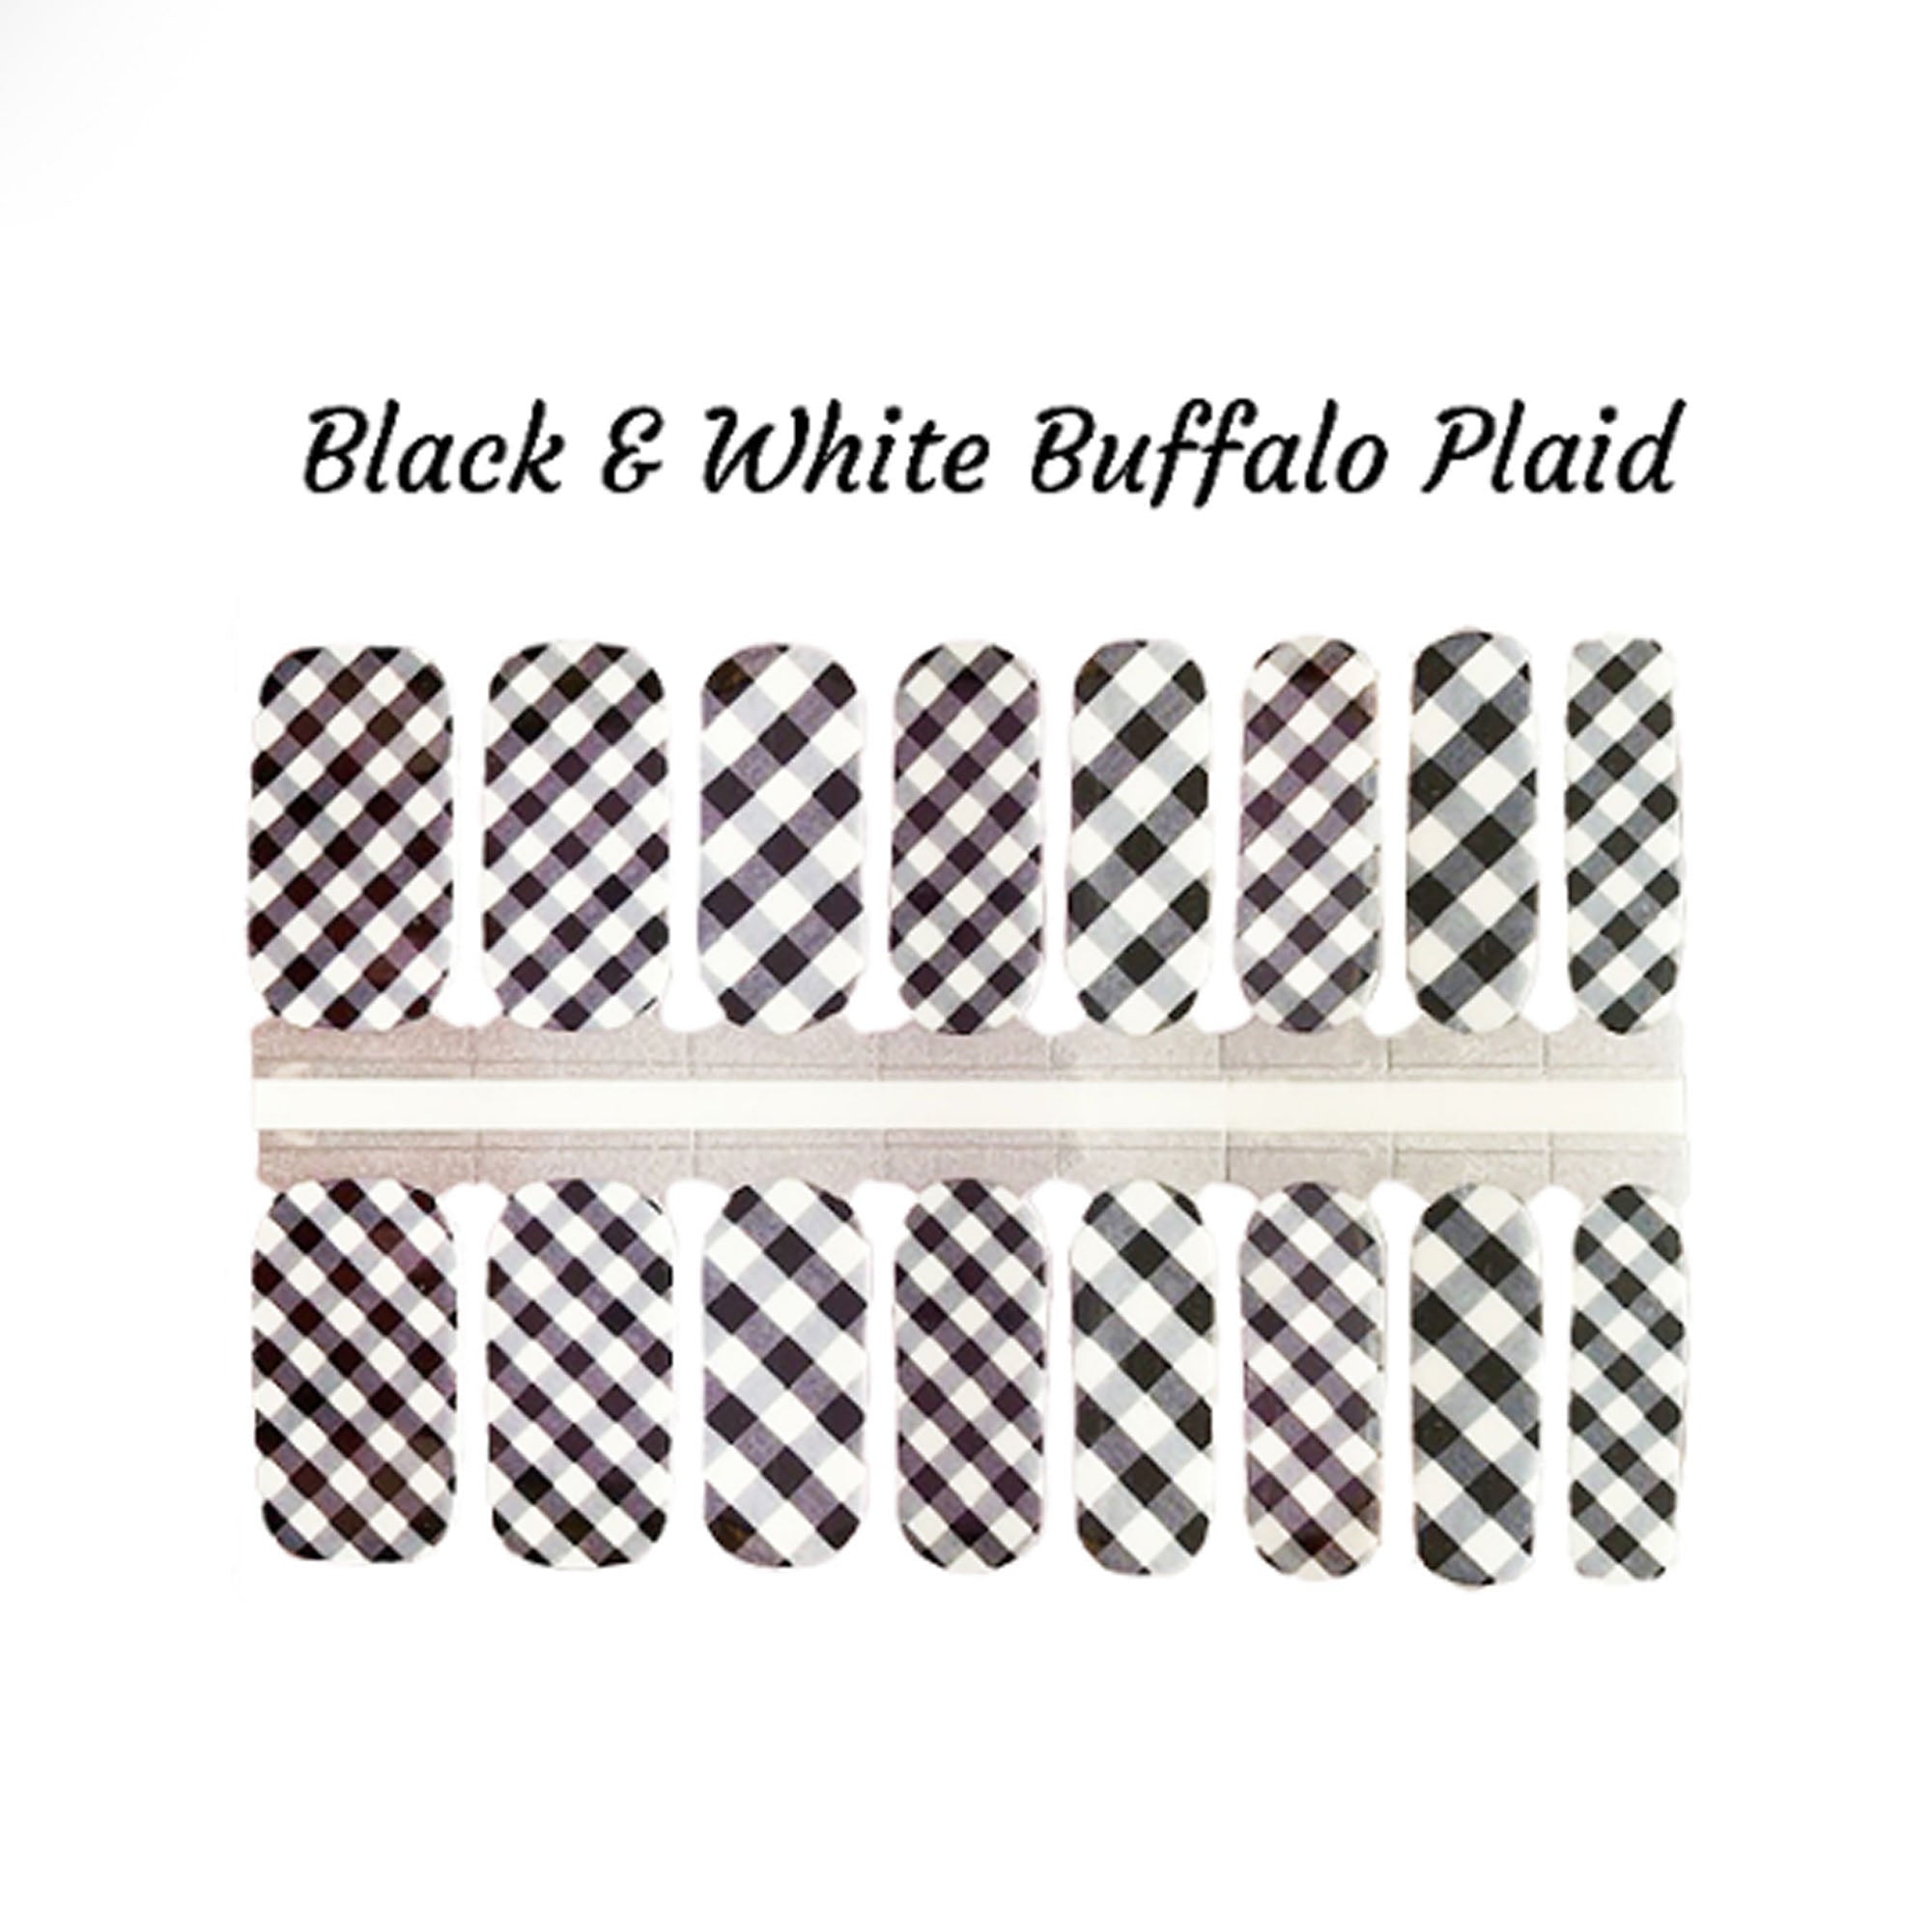 Black & White Buffalo Plaid